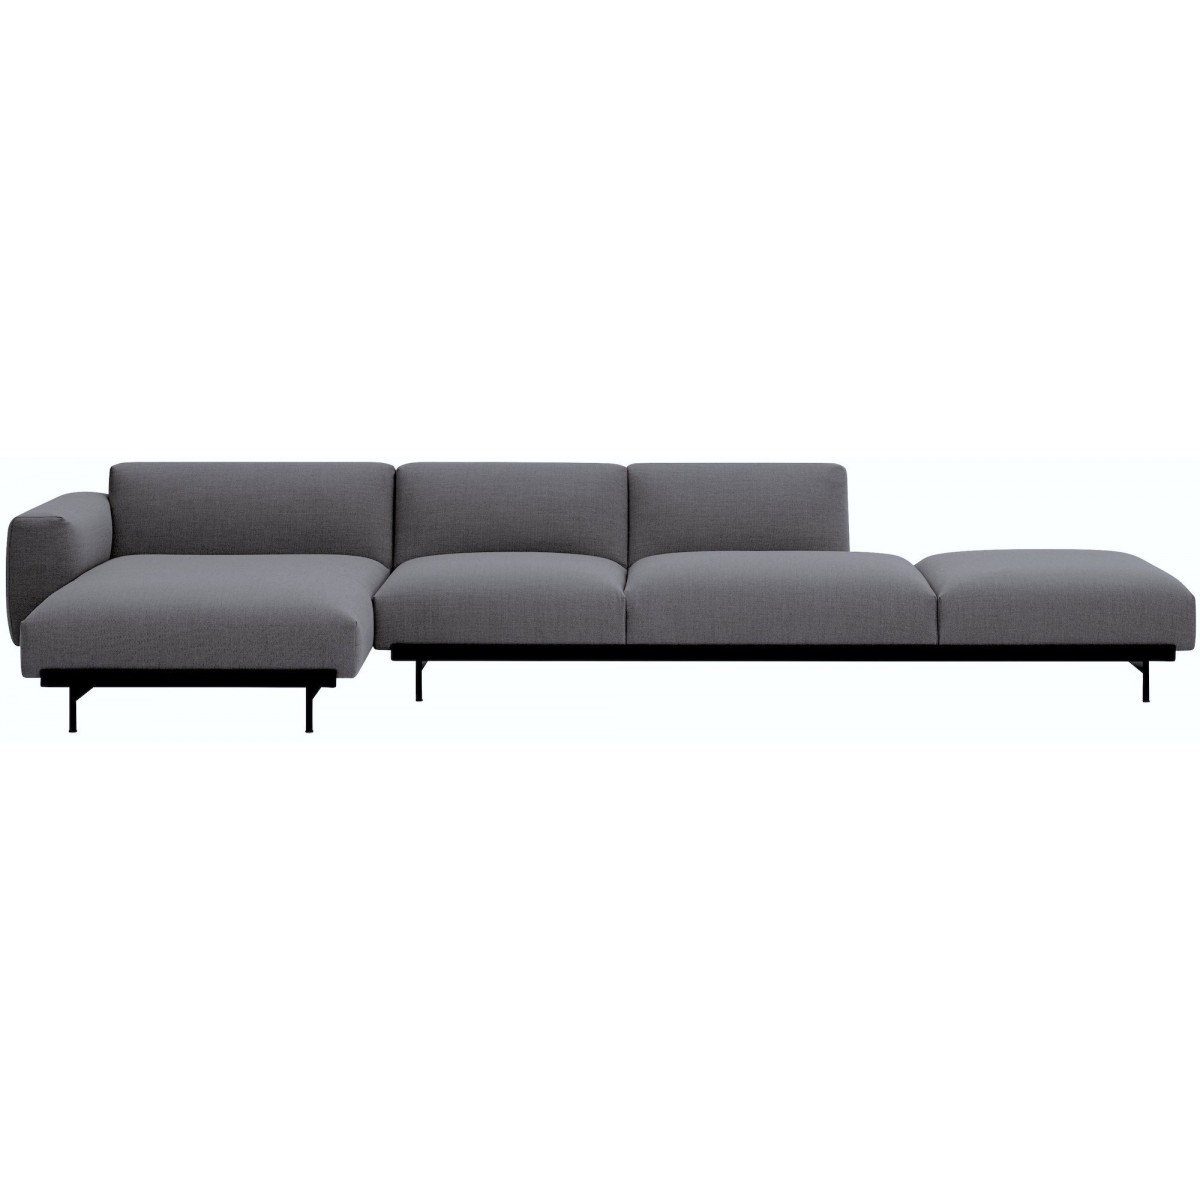 Ocean 80 / black – In Situ 4-seater sofa / configuration 5 – 378 x 169 cm